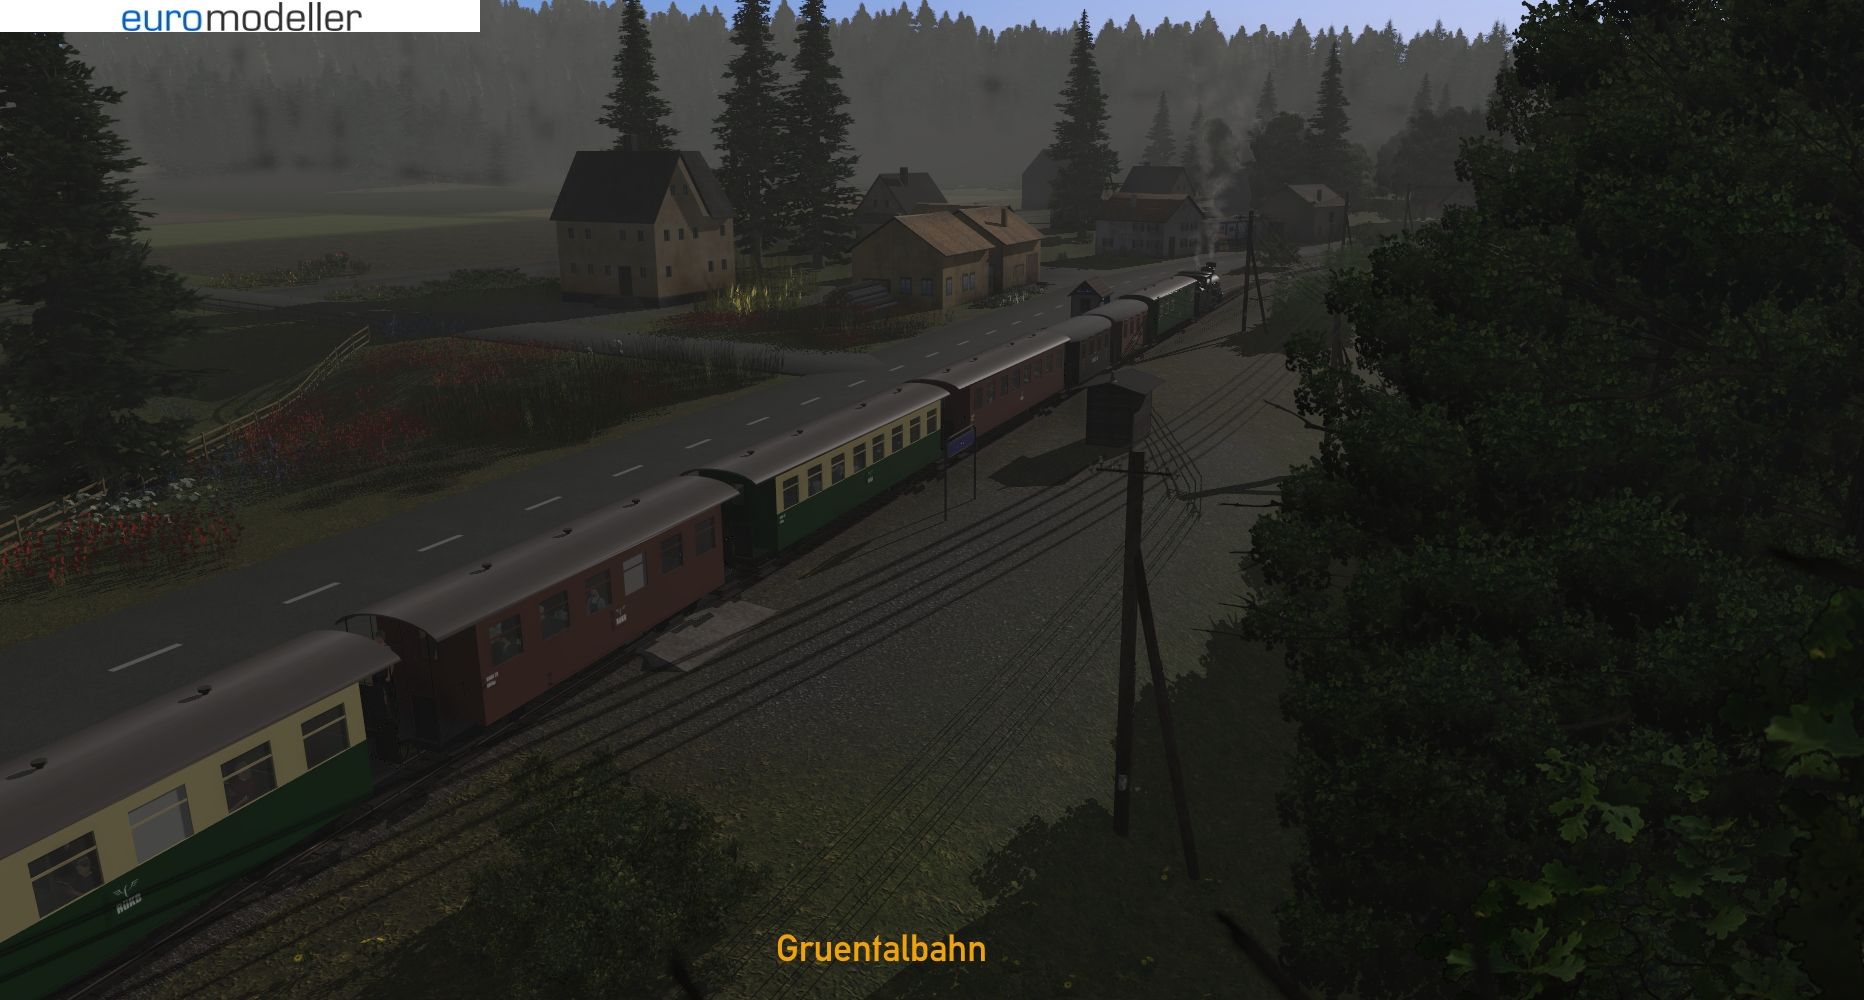 Gruentalbahn-7.jpg